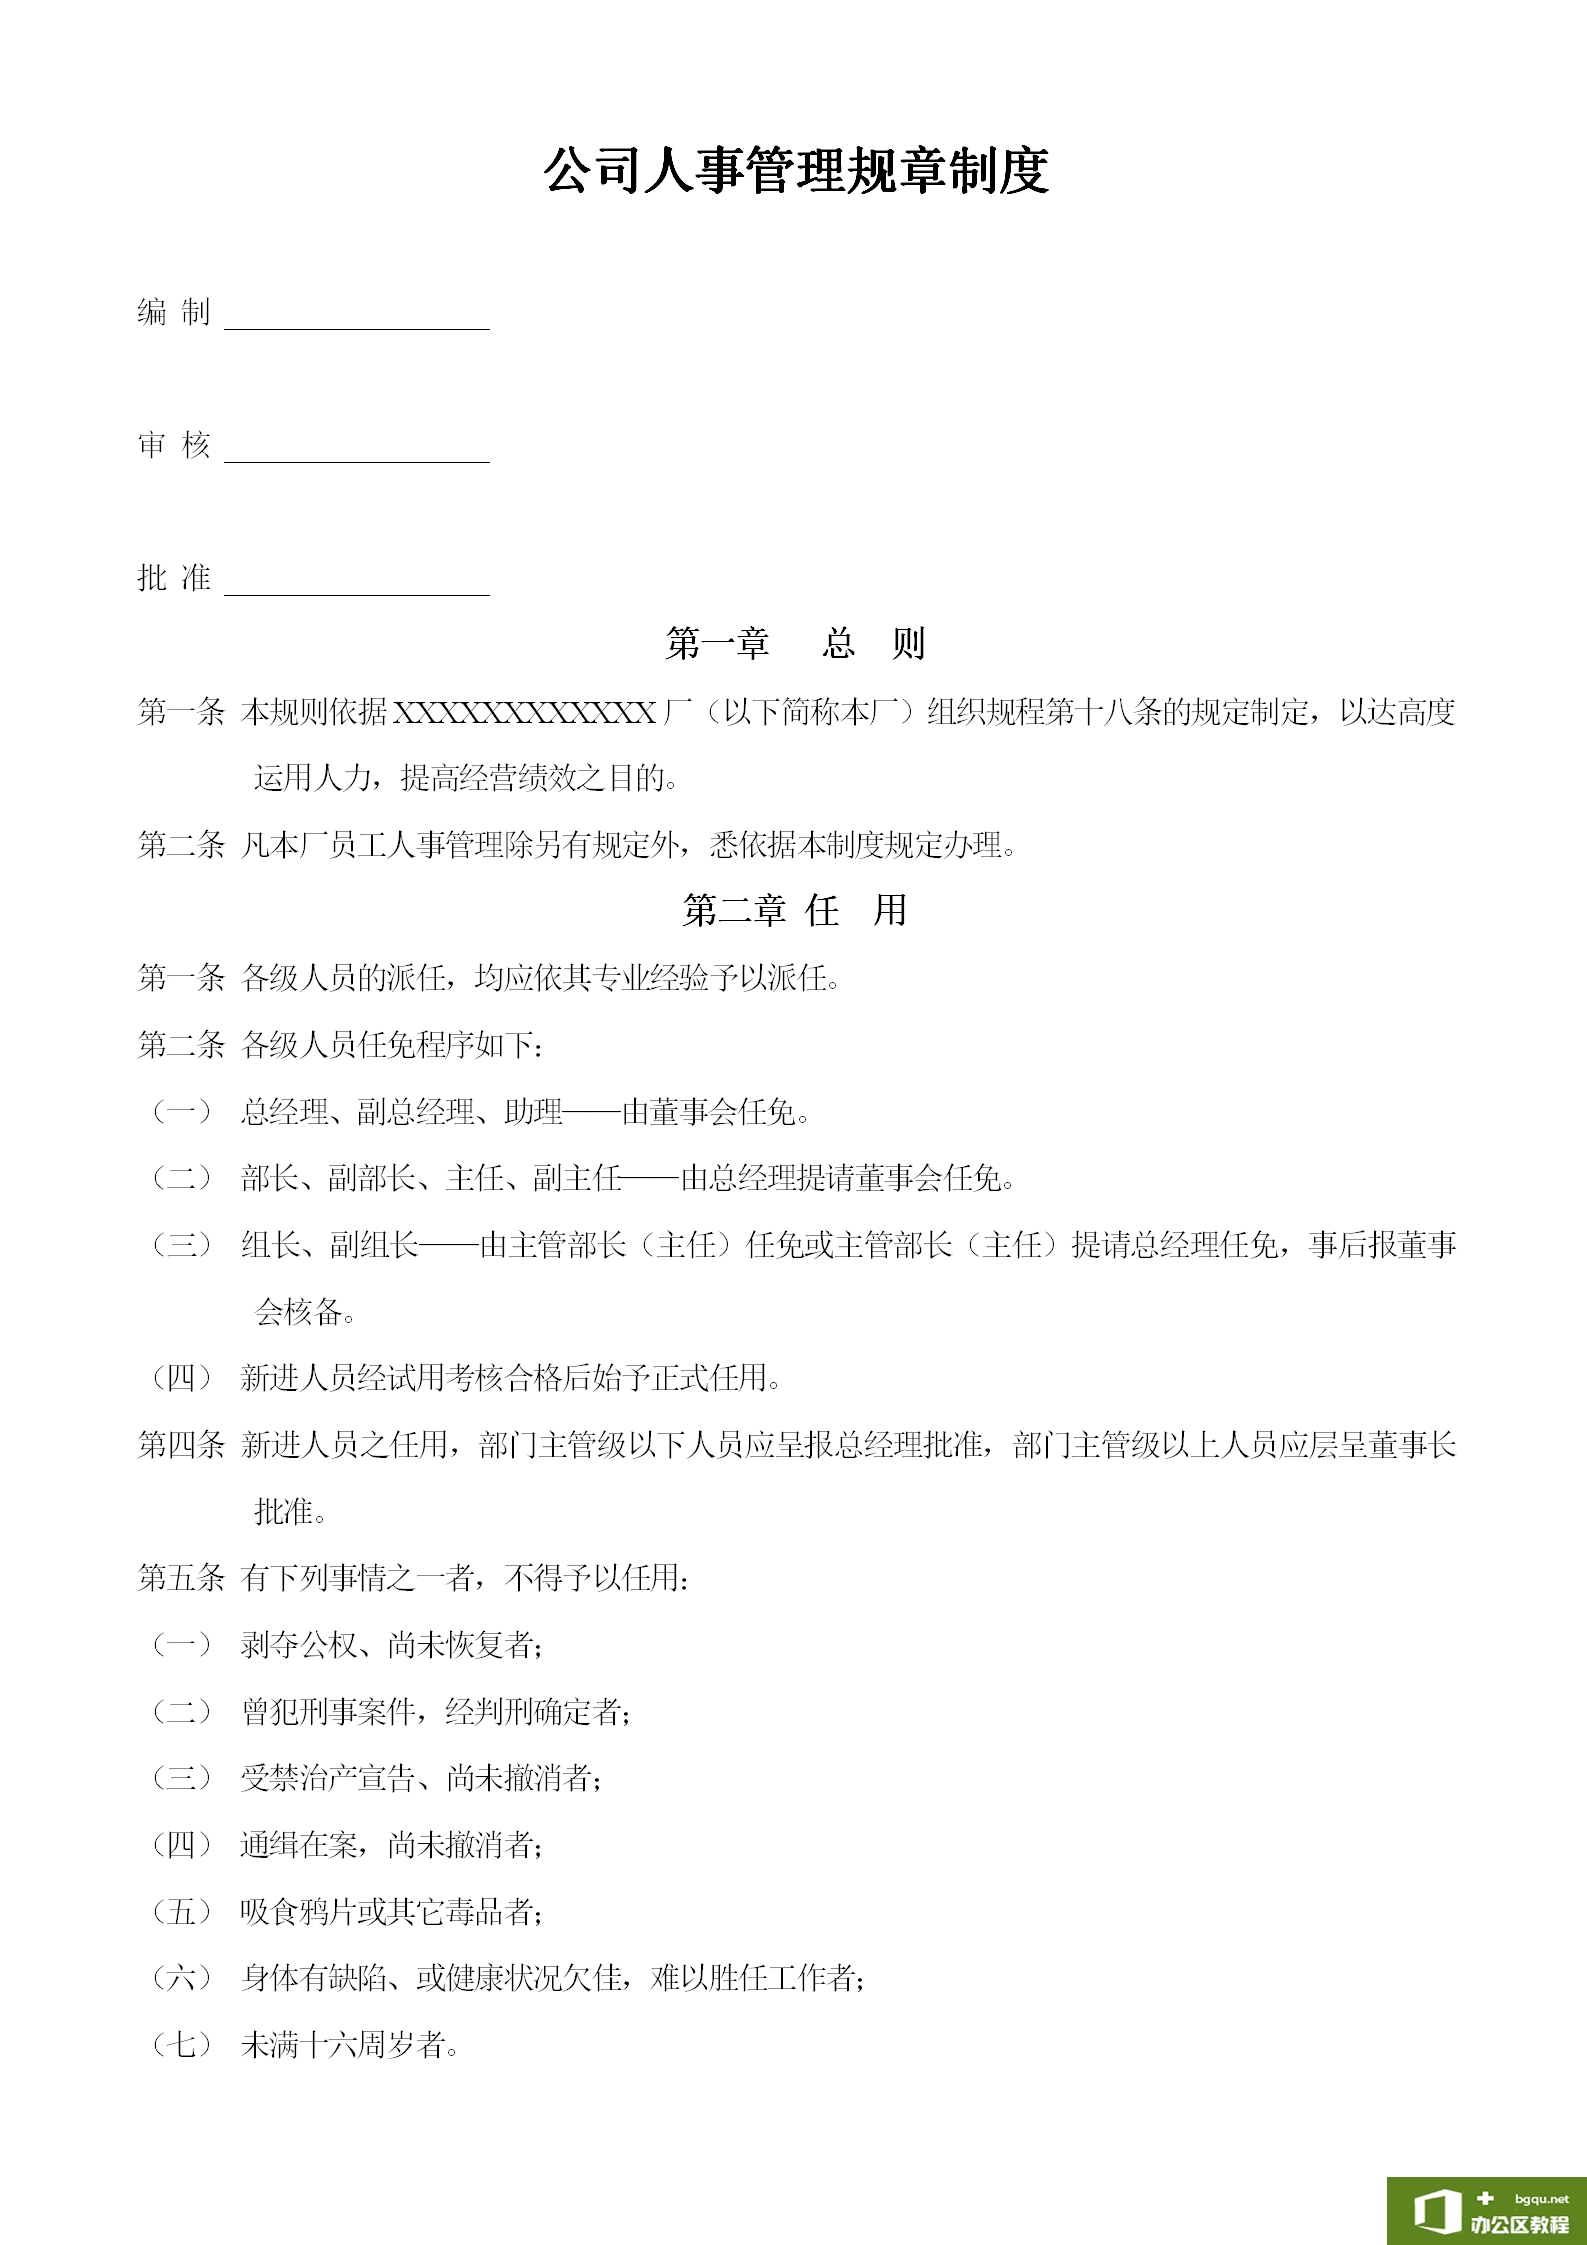 公司人事管理规章制度范例-word模板-免费下载